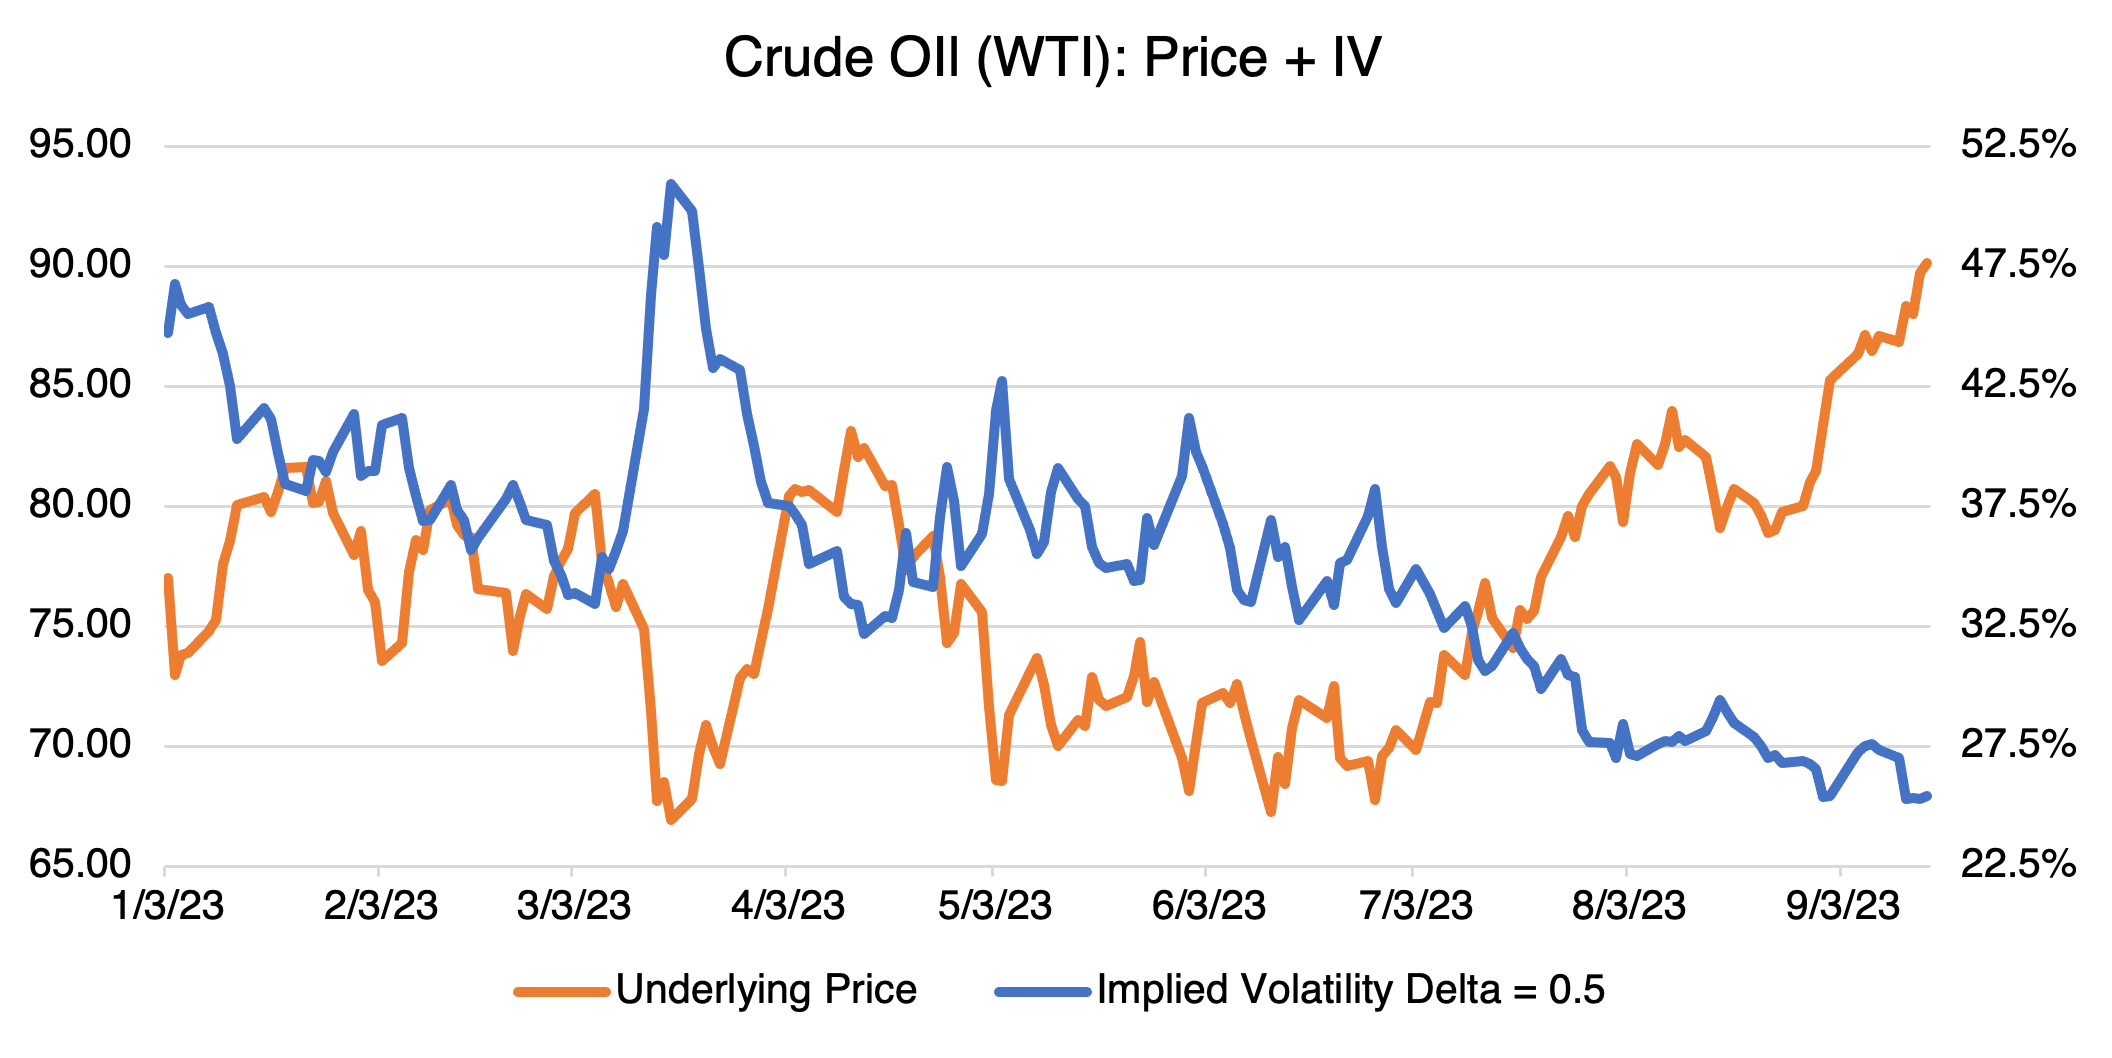 Crude OIl (WTI): Price + IV